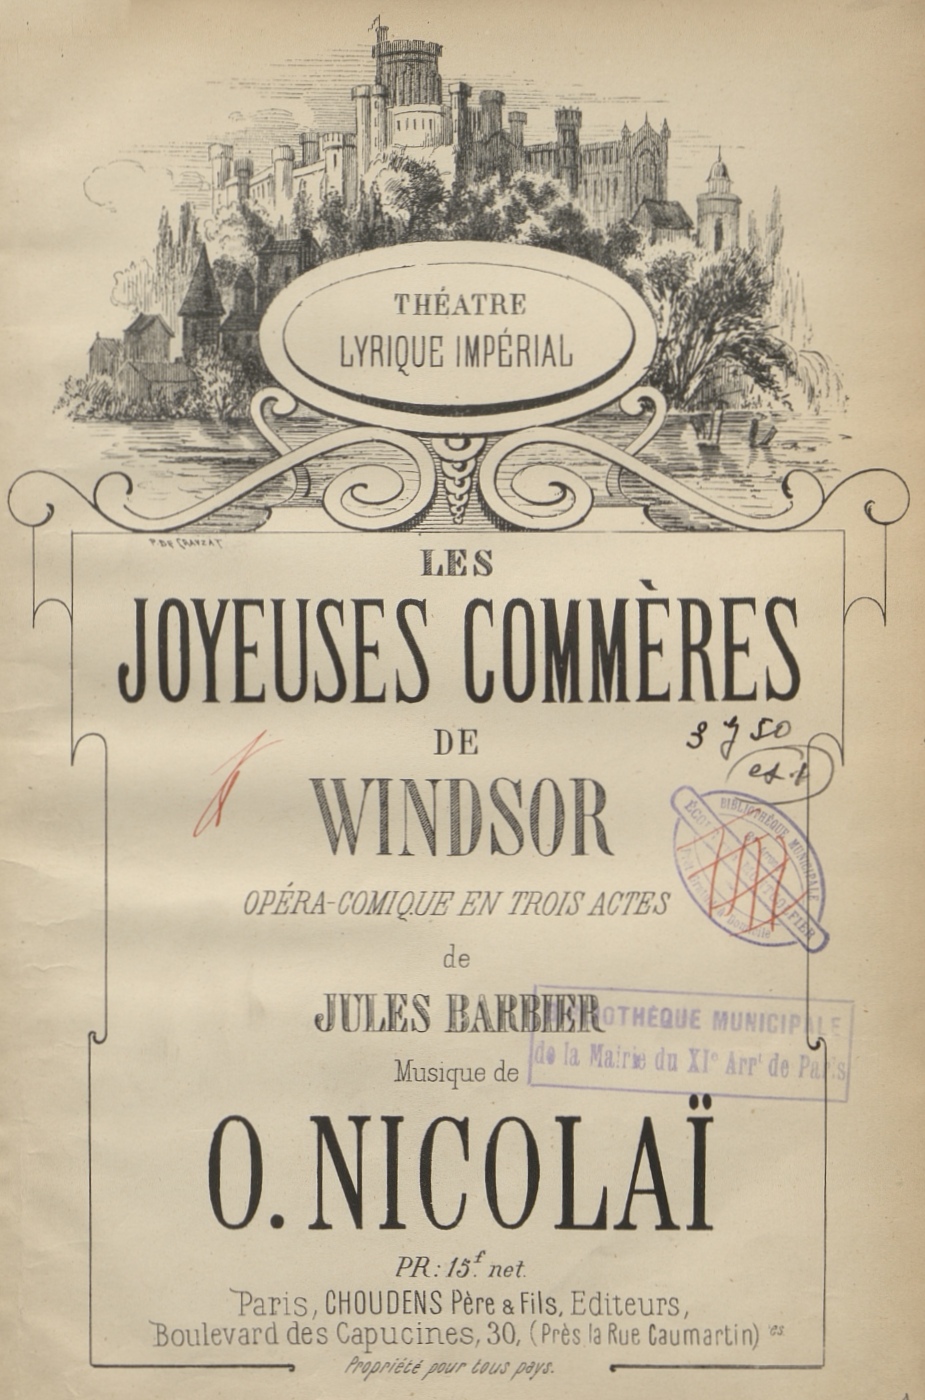 Otto Nicolai, Les Joyeuses commères de Windsor, Réduction: piano-chant, Paris: Choudens, [ca 1867]